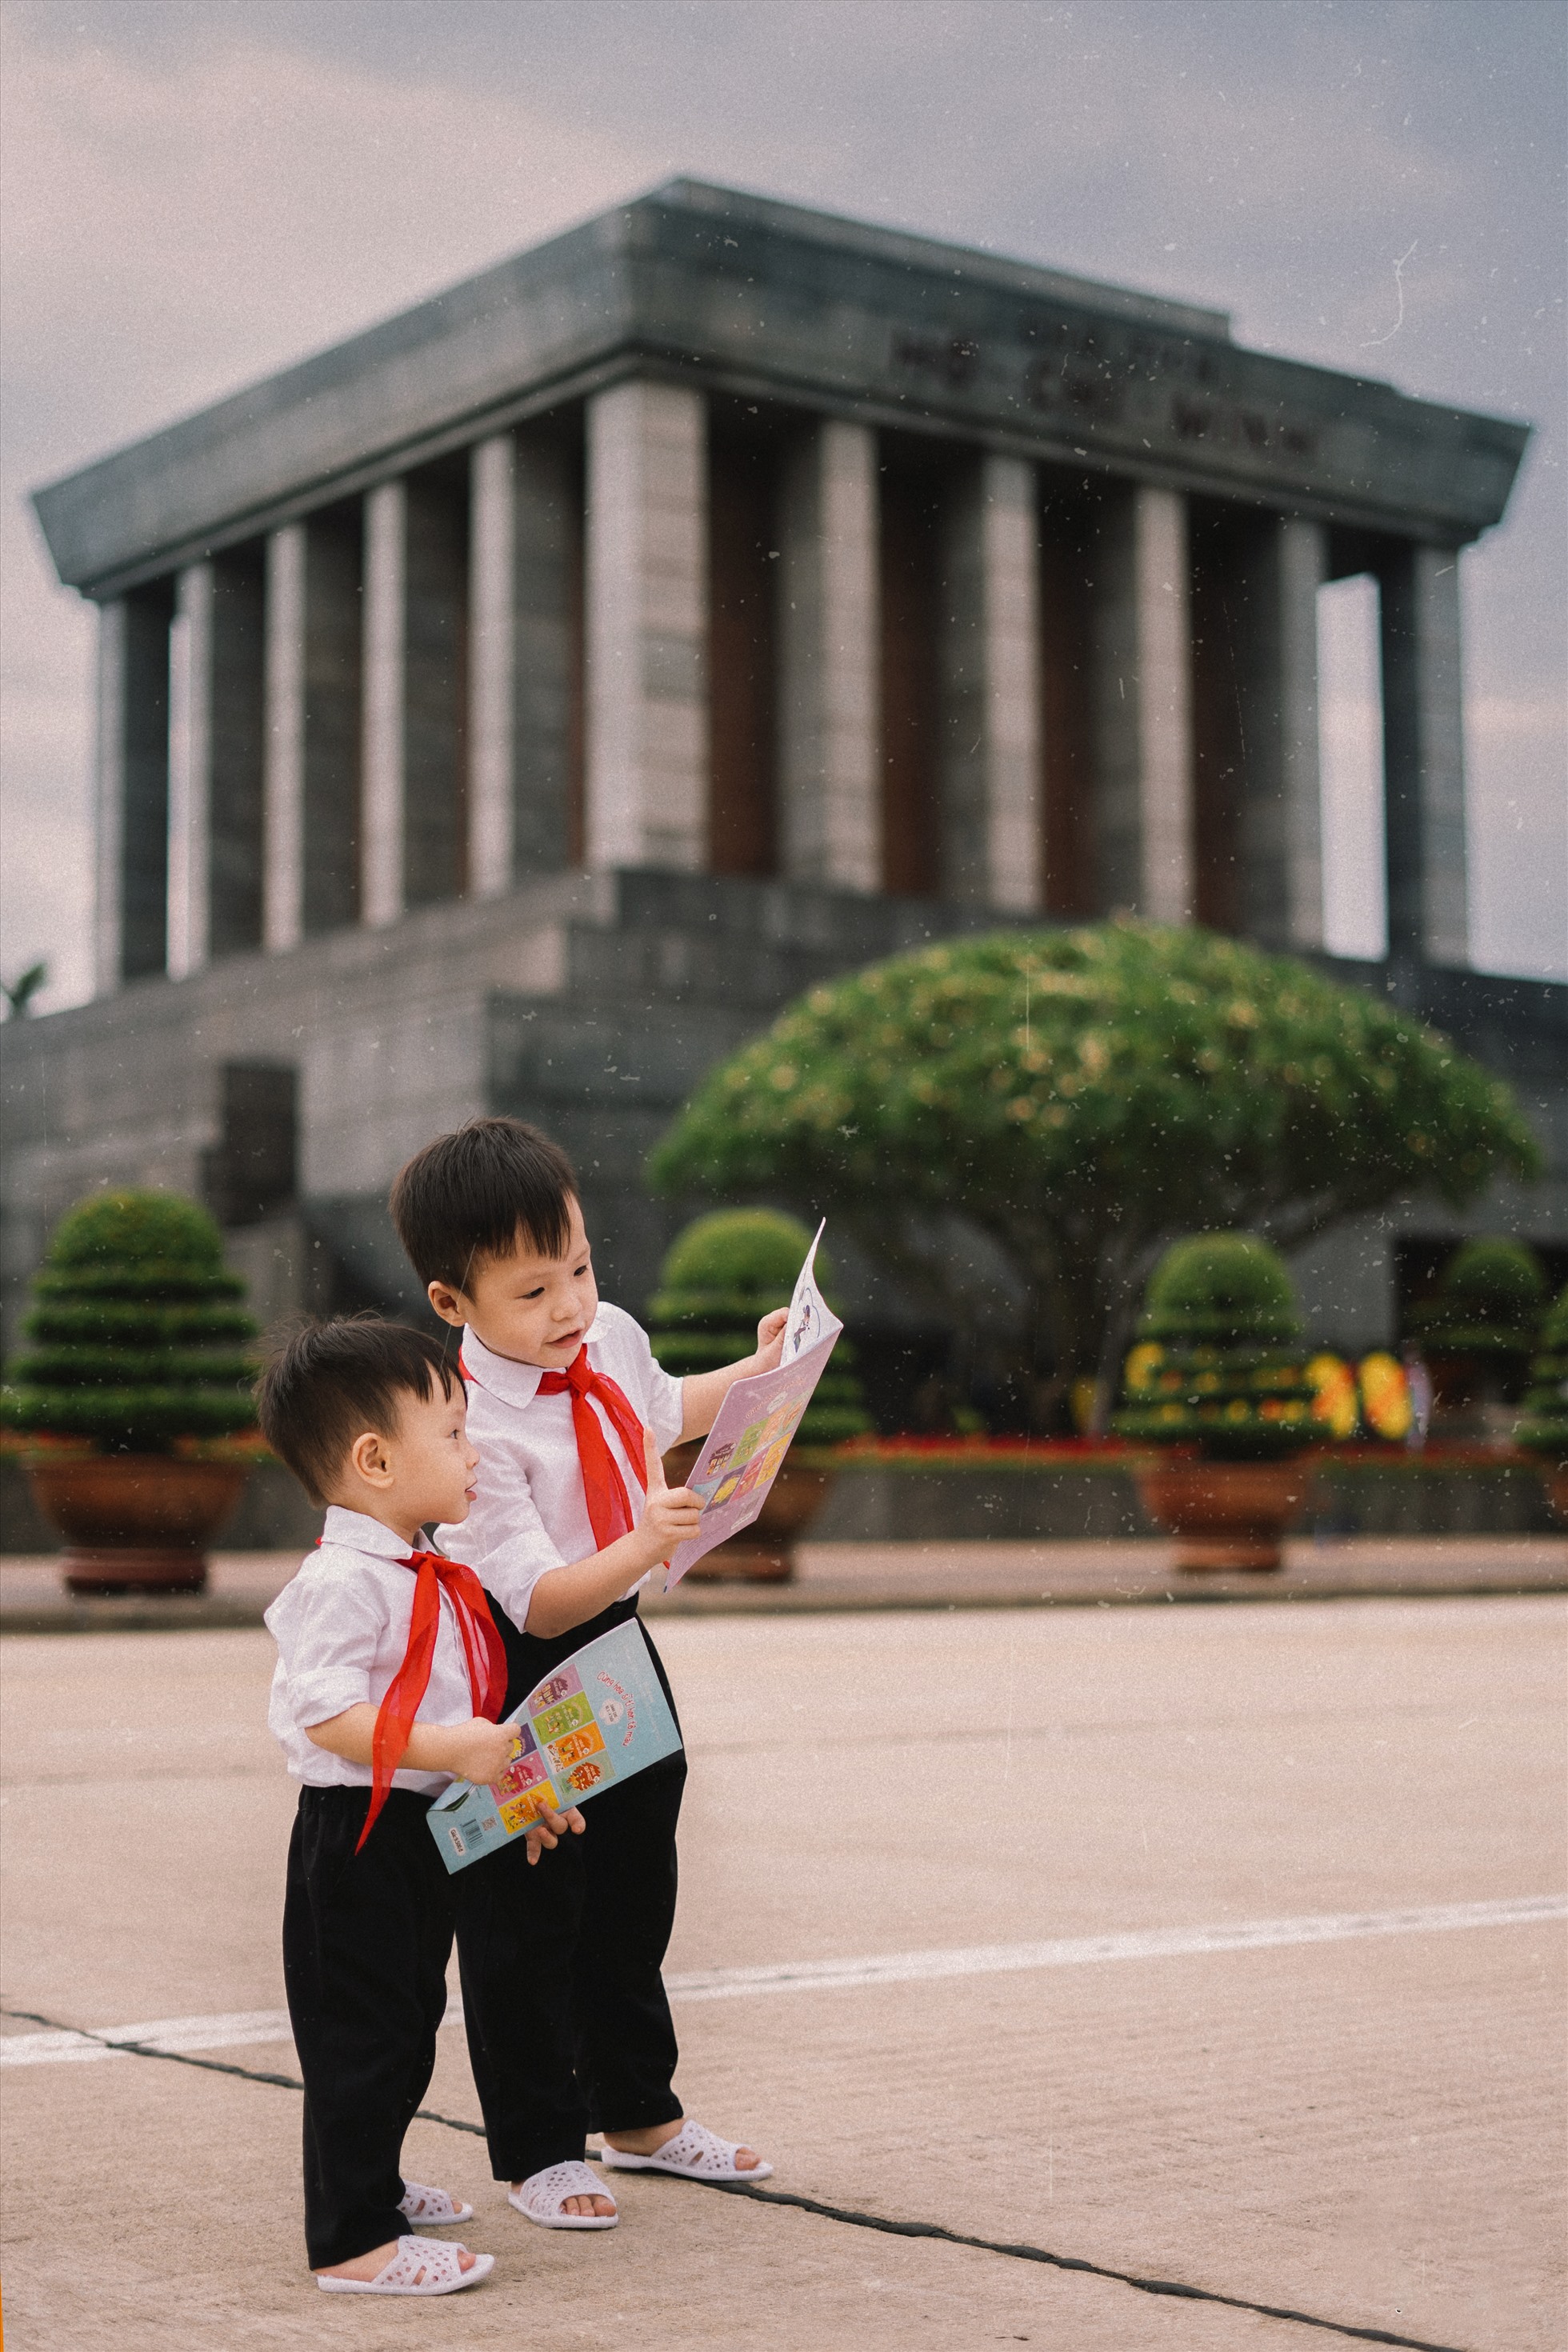 Viếng lăng Bác - Viếng lăng Bác là một nghi lễ quan trọng đối với người Việt Nam. Đây là cơ hội để bạn chứng kiến tình cảm và sự tôn kính của người dân Việt Nam dành cho vị lãnh tụ Hồ Chí Minh.